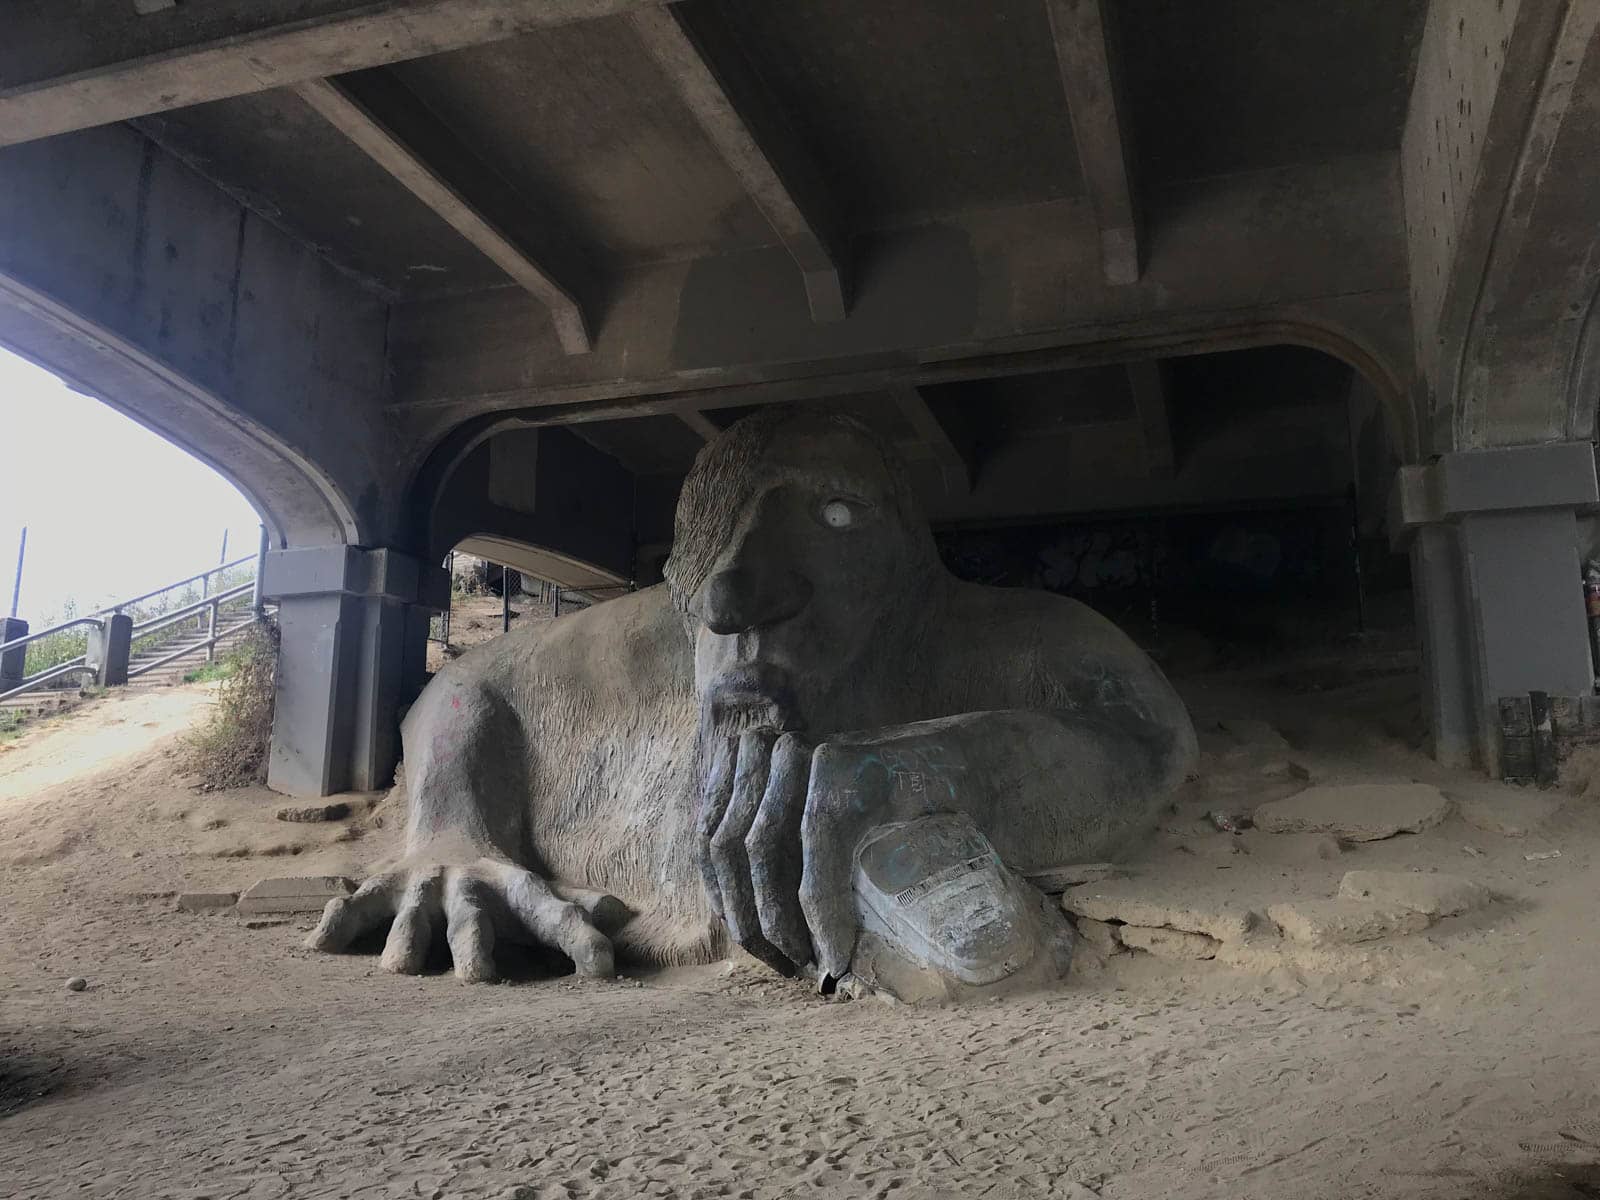 A troll-shaped sculpture beneath a bridge. The troll’s 